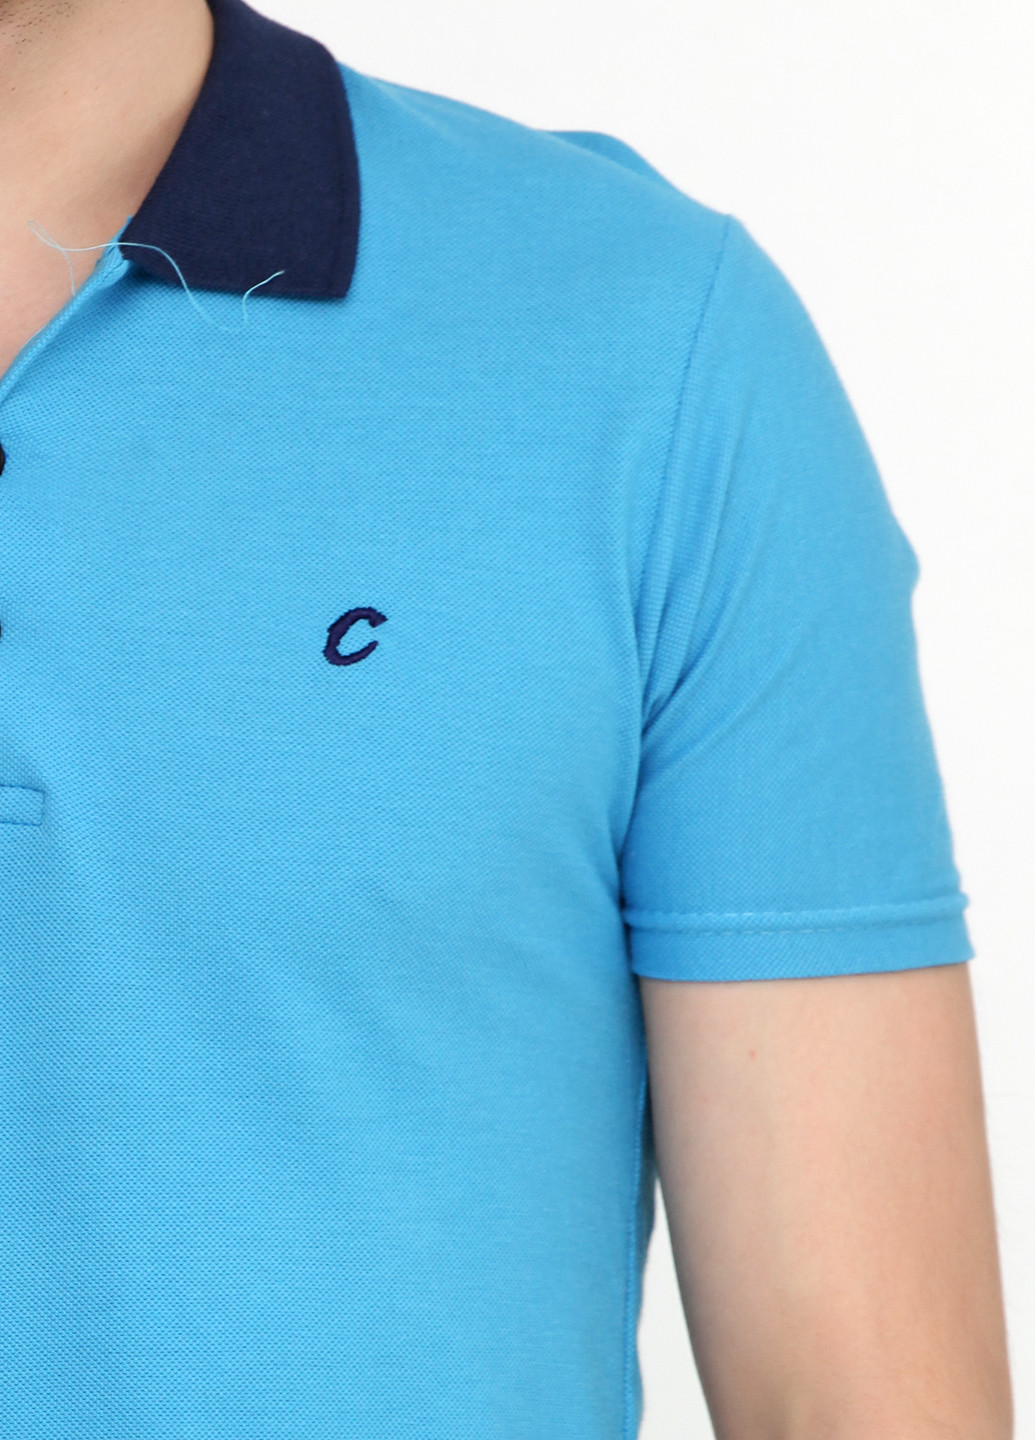 Голубой футболка-поло для мужчин Chiarotex с логотипом